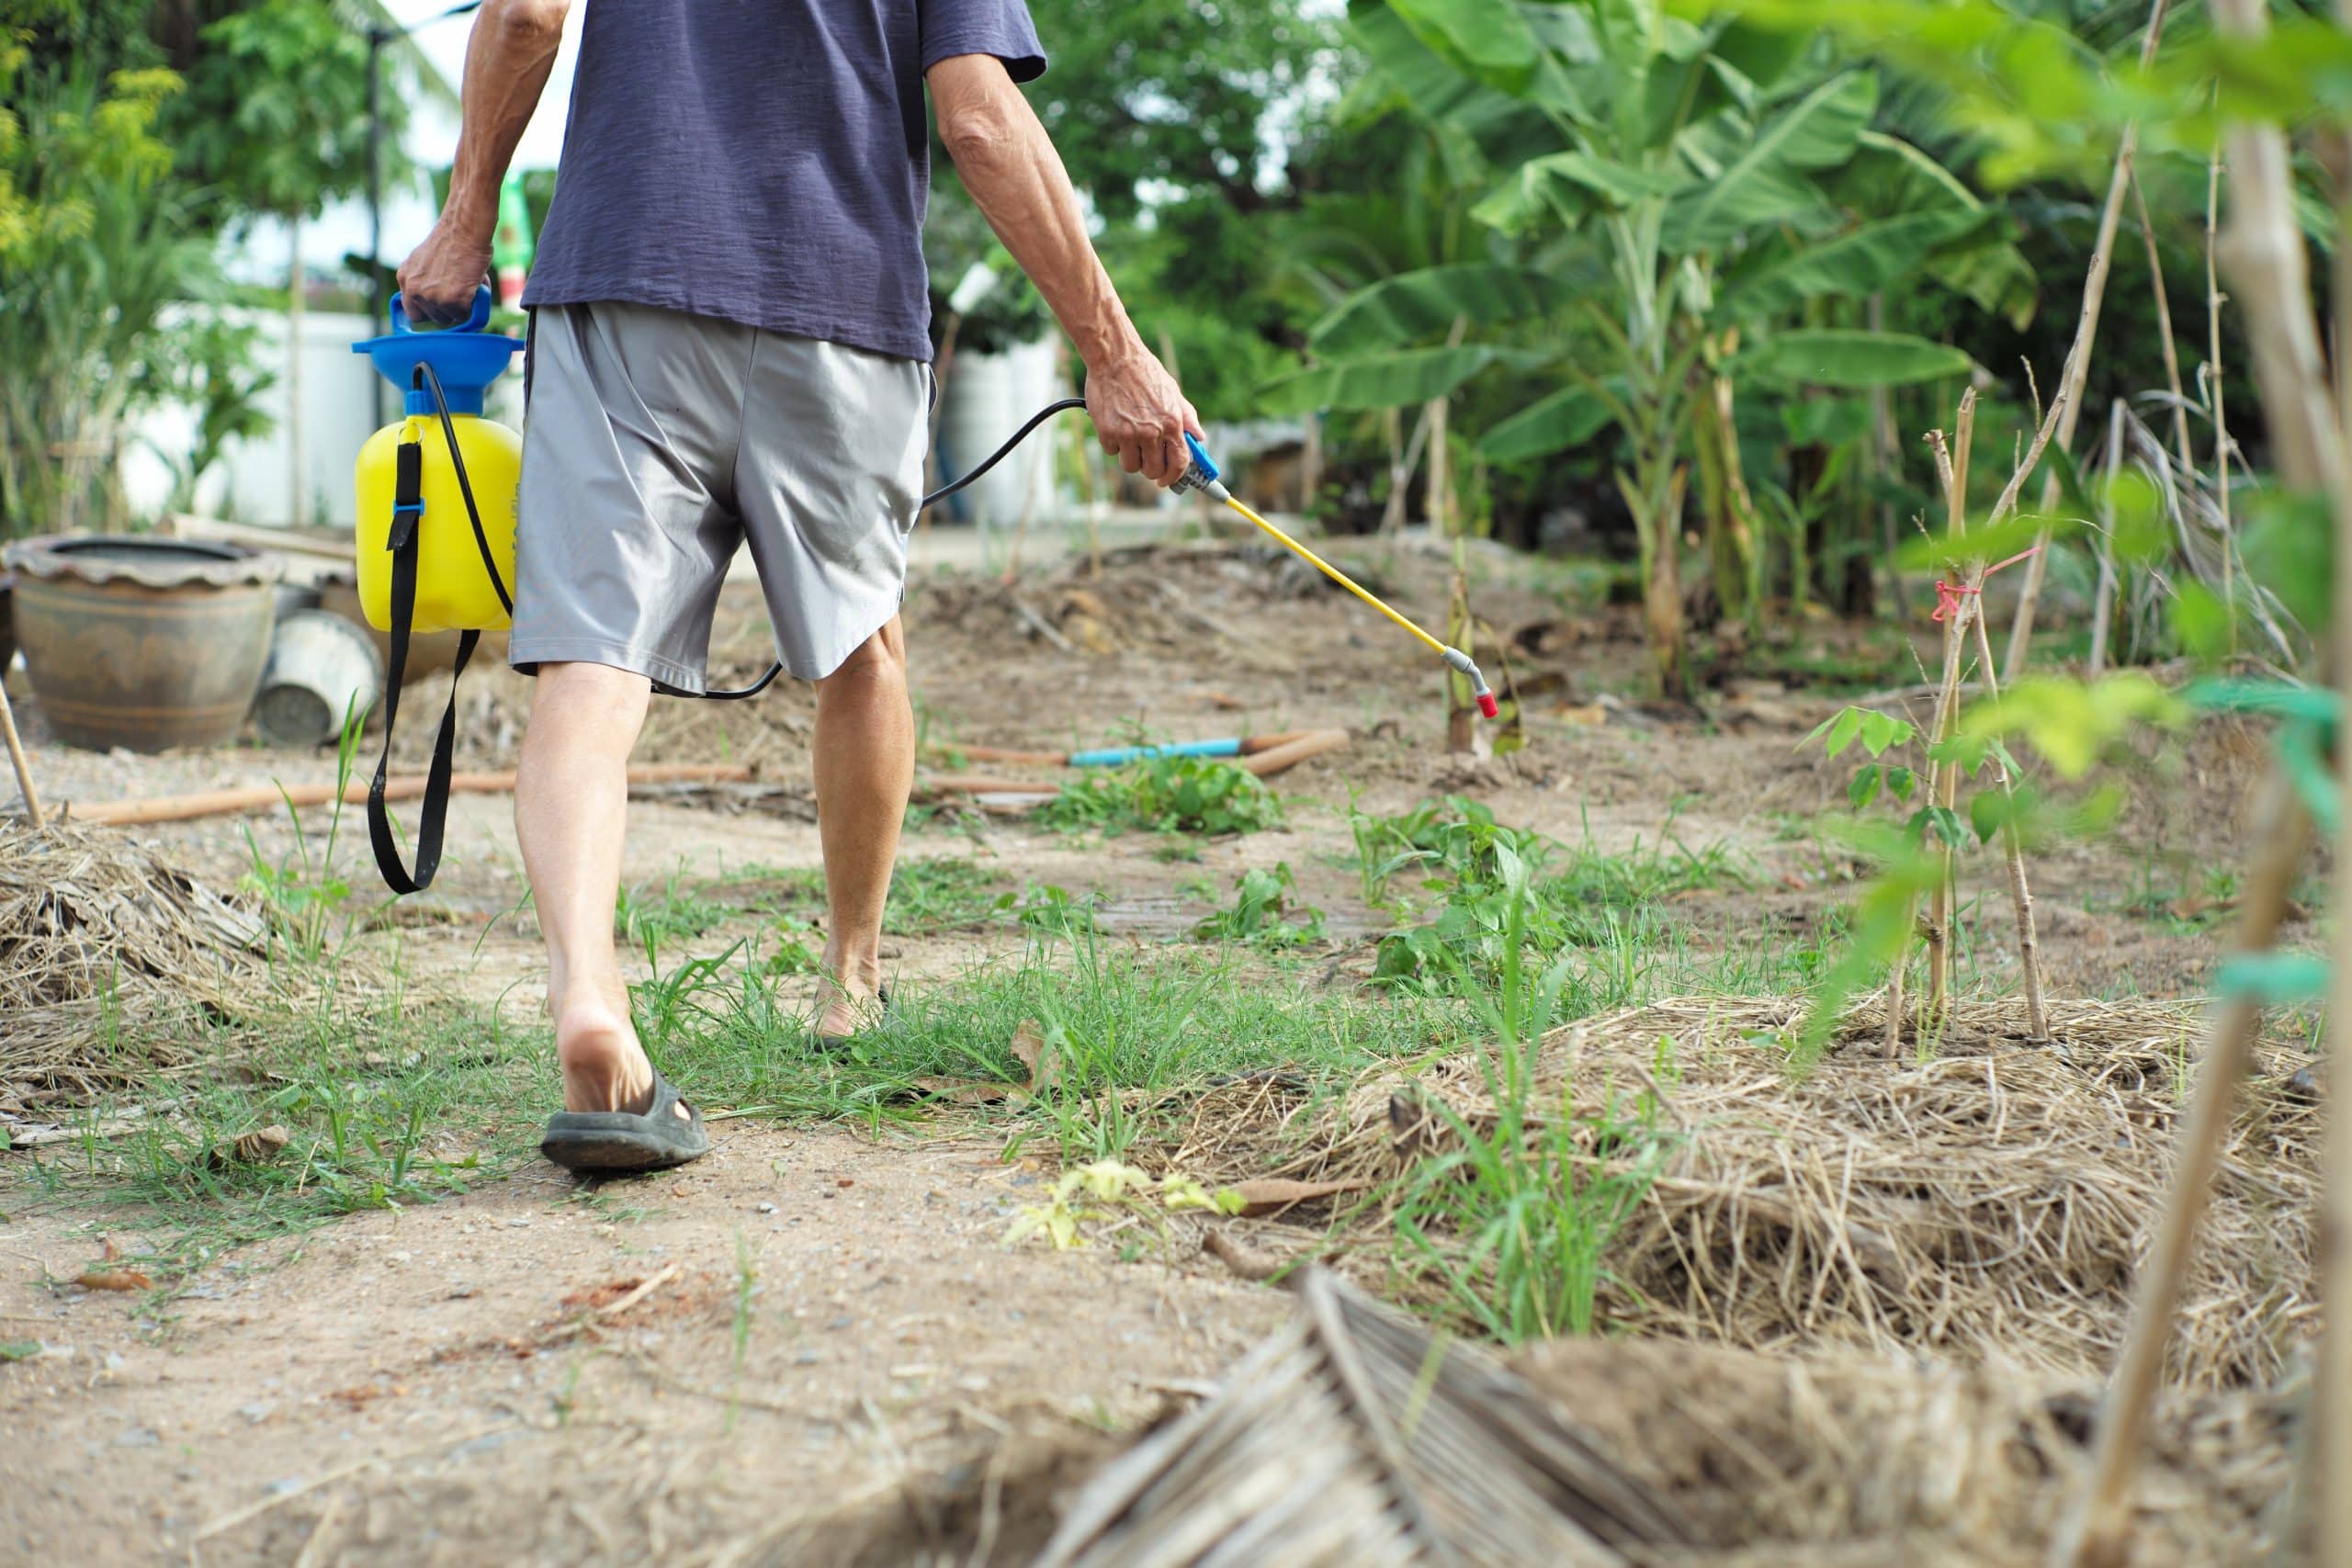 Vue de dos d'un jardinier en tenue décontractée pulvérisant de l'insecticide et un produit chimique pour éliminer les mauvaises herbes au sol.